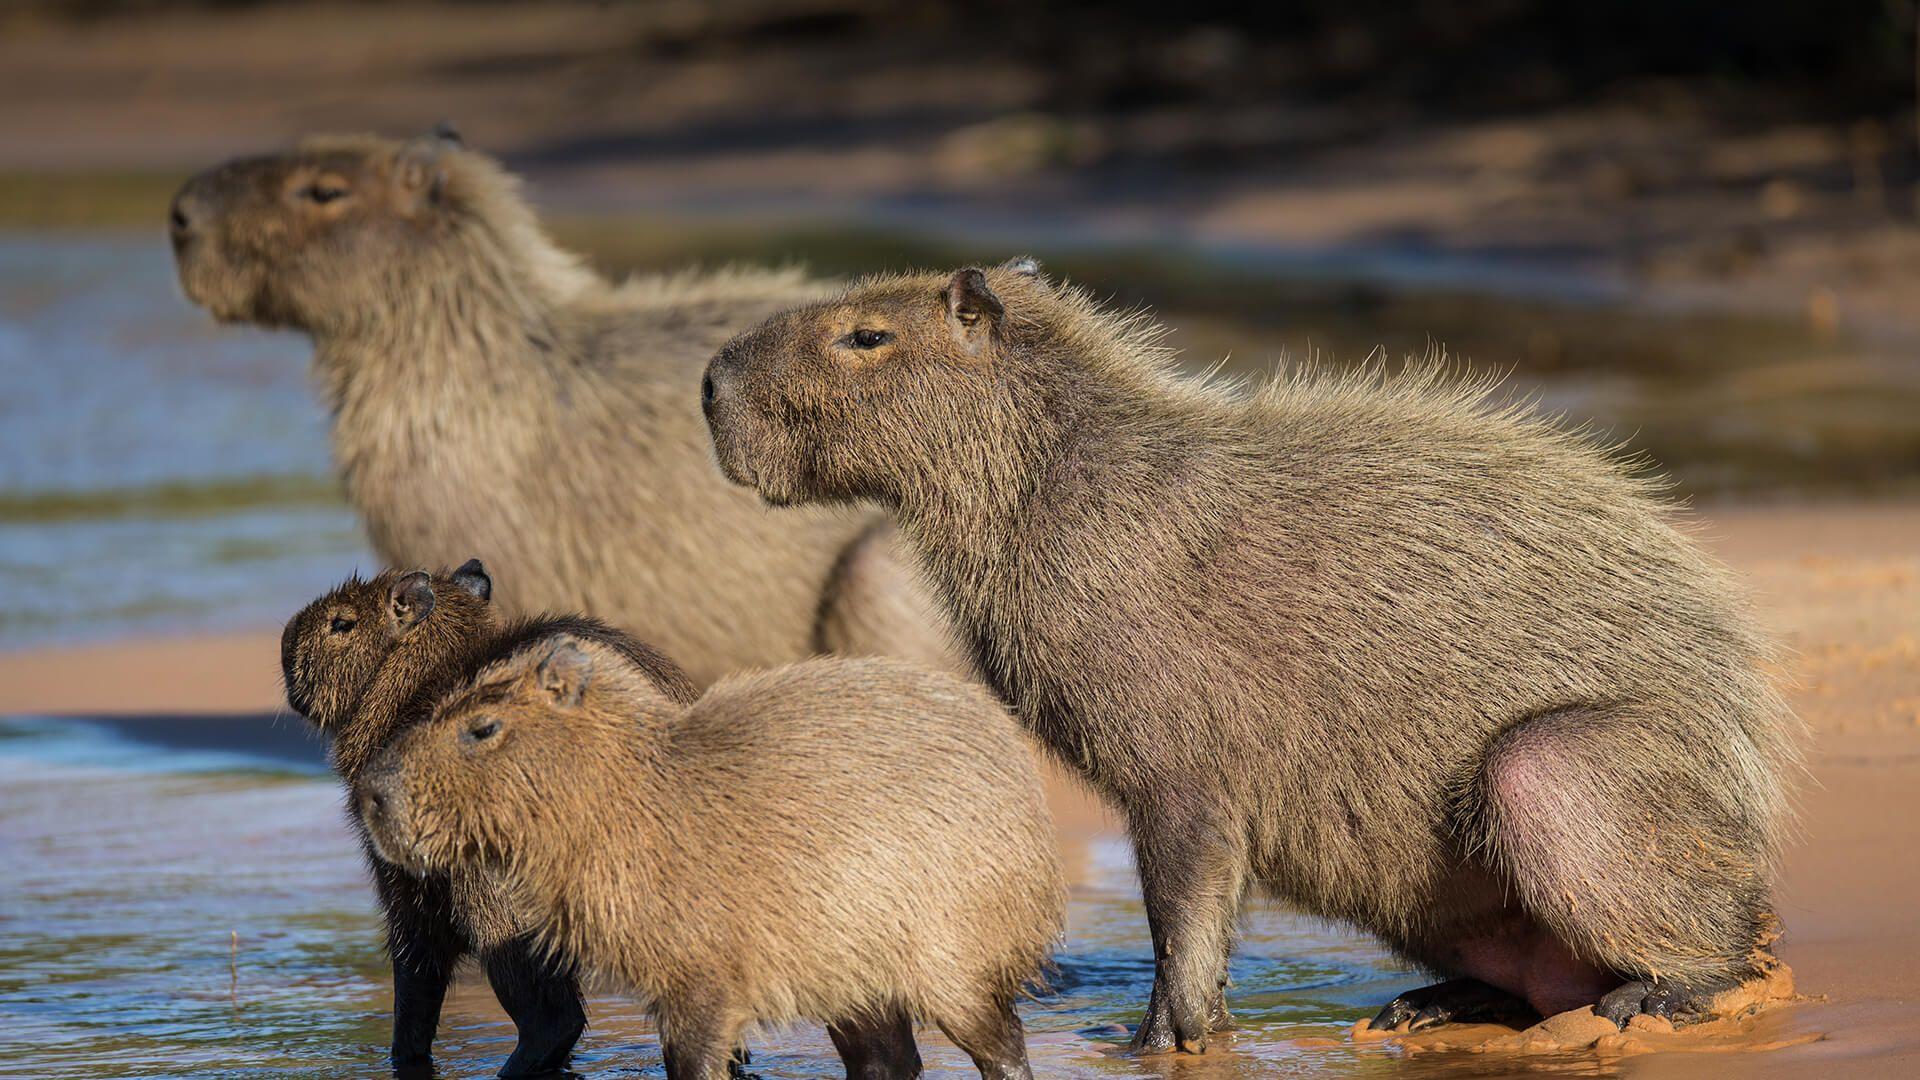 iOS 16 Capybara wallpaper for all of you who need a little more capybaras  in your life   rcapybara